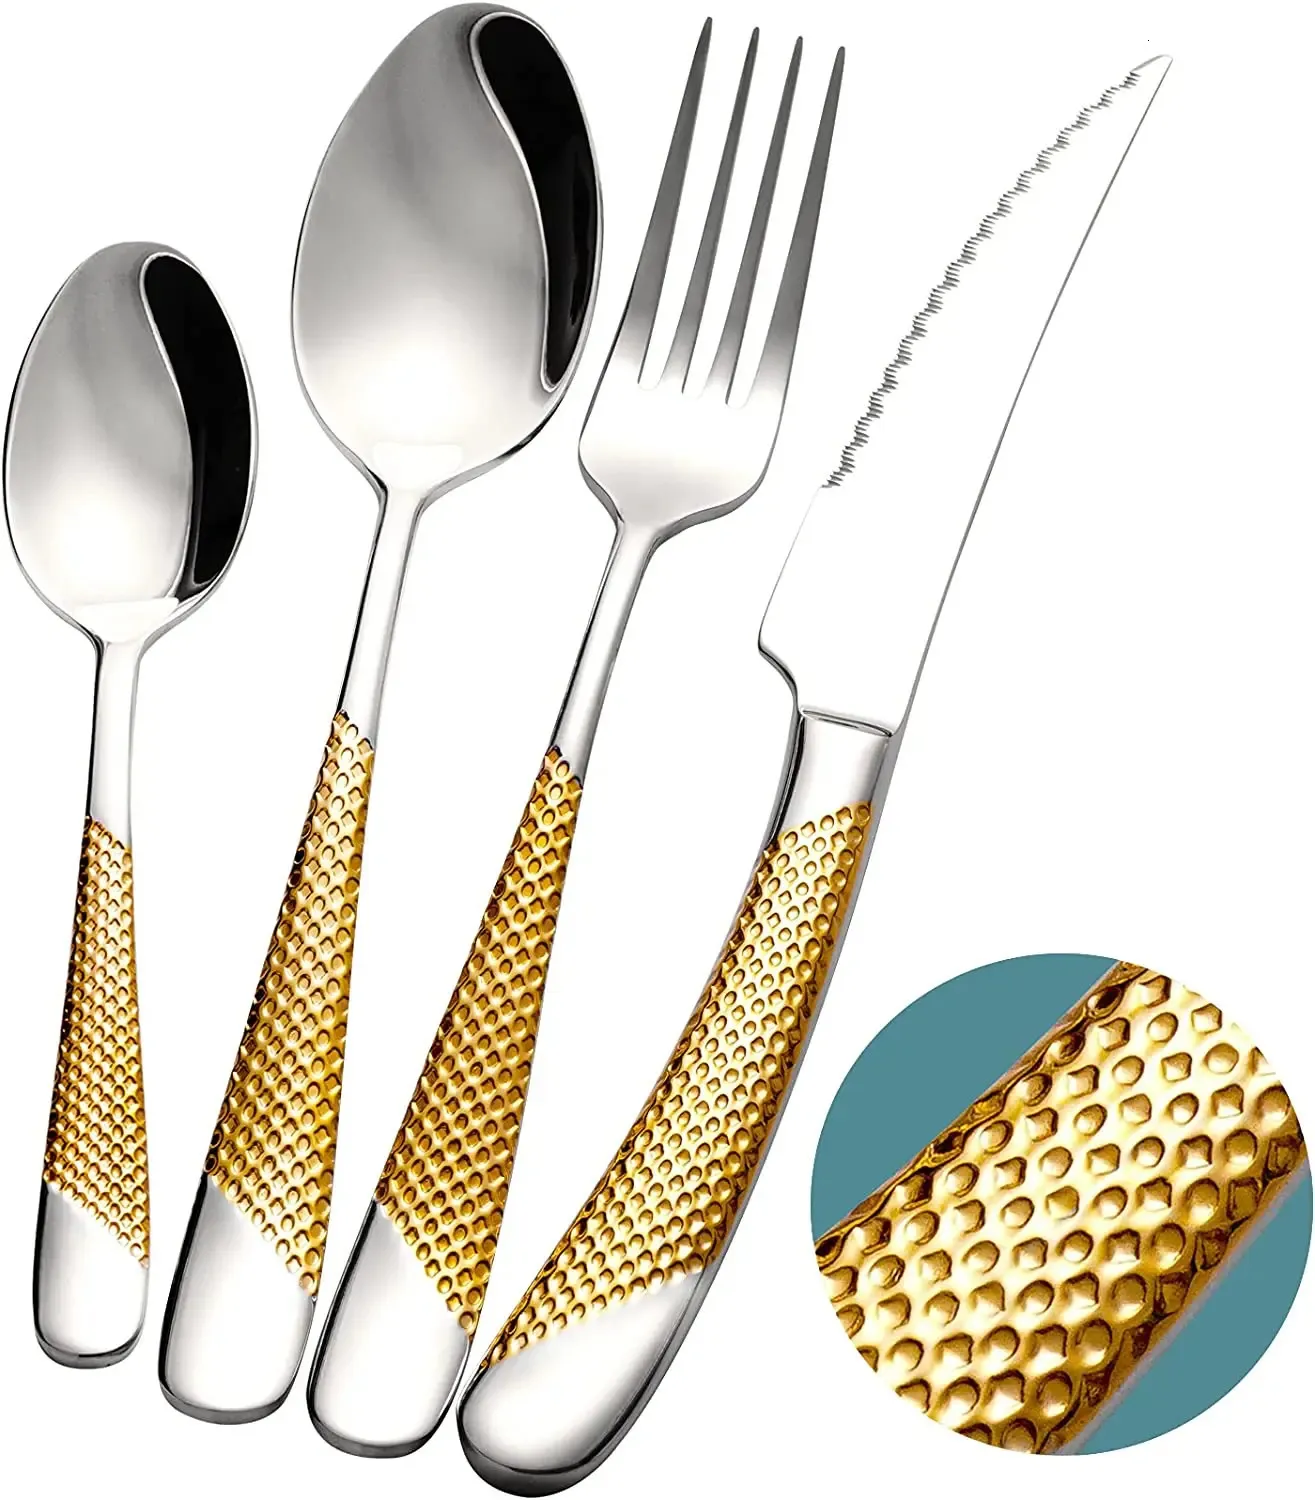 Ensembles de vaisselle martelé argent or argenterie ensemble couverts en acier inoxydable ustensiles de cuisine vaisselle couteaux fourchettes cuillères 231211